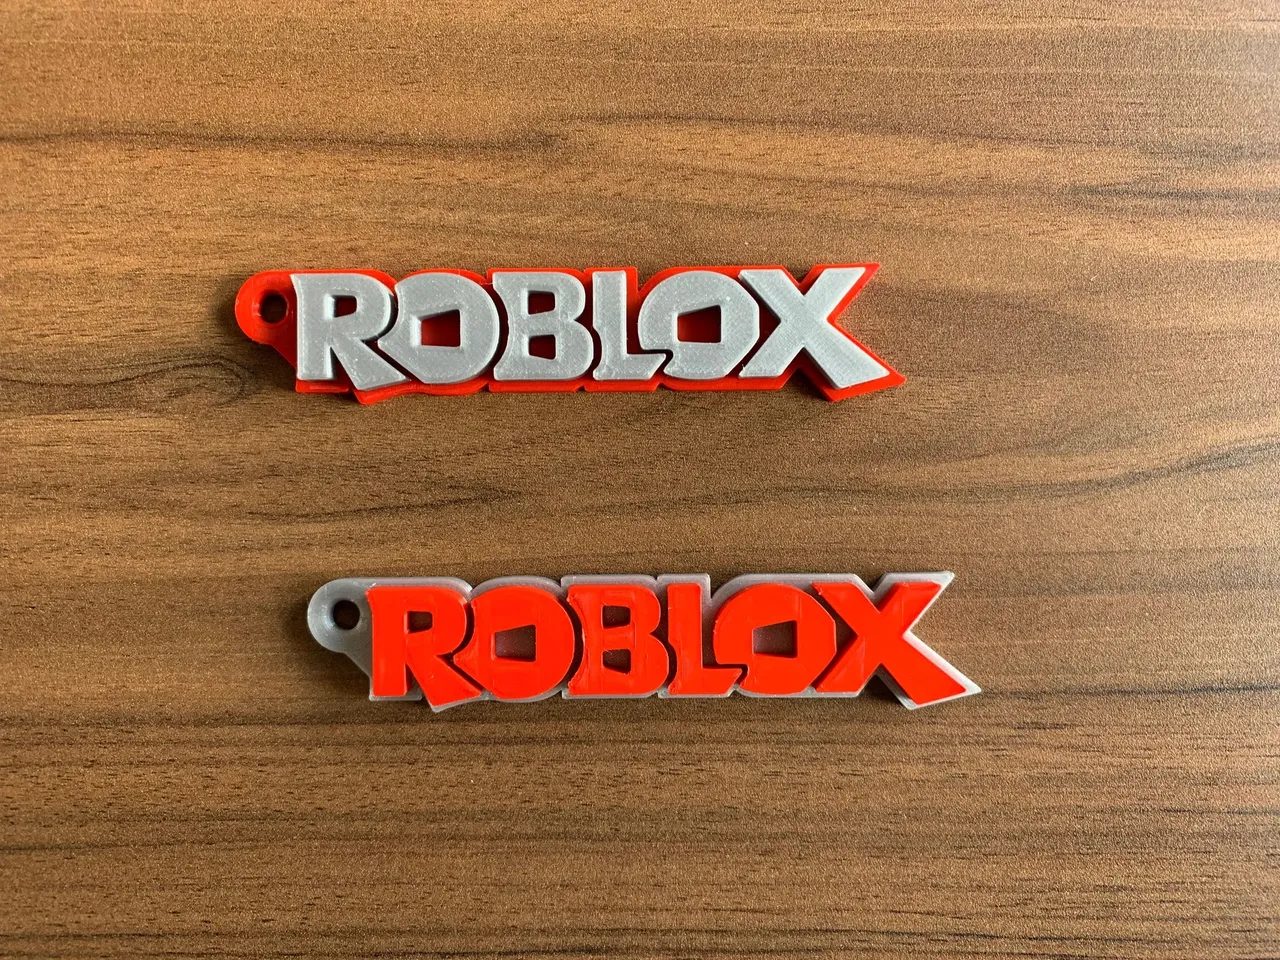 Roblox 3D Models Free Download